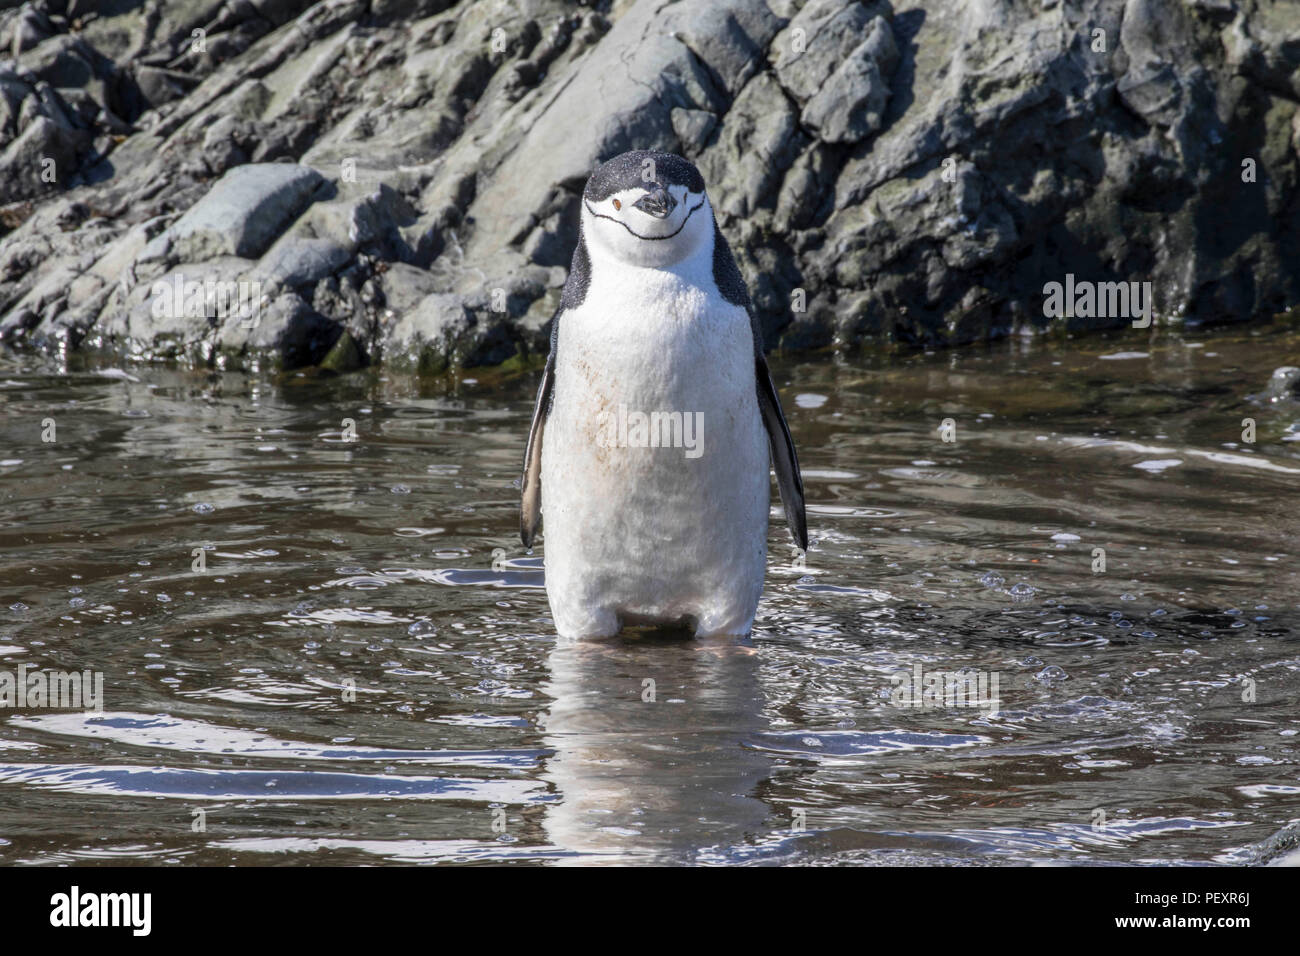 Pinguini Chinstrap rookery a sud le isole Shetland Foto Stock